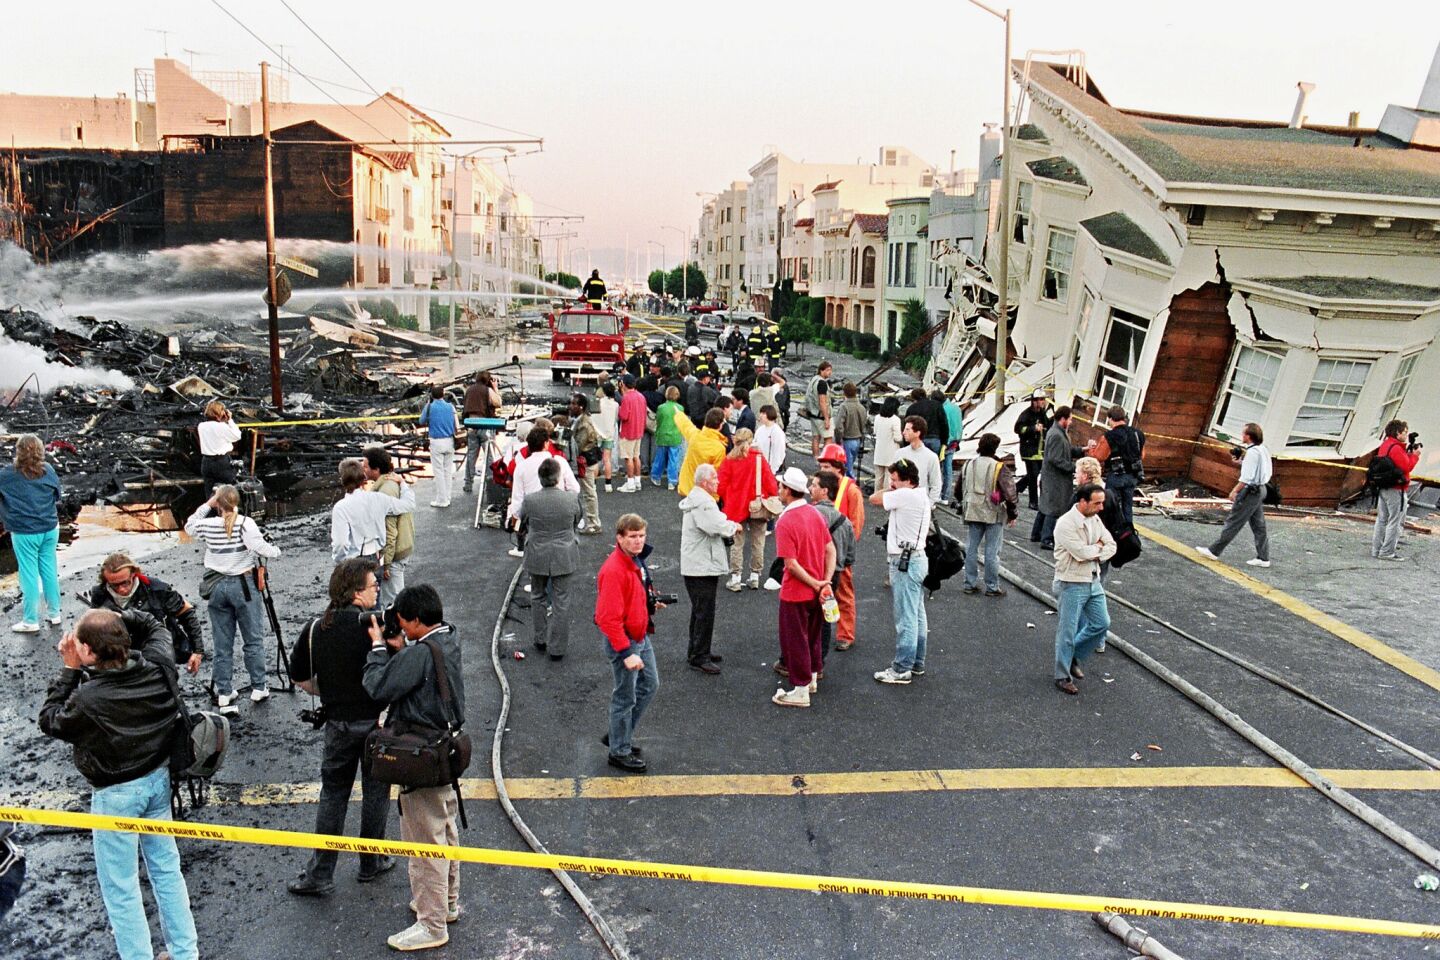 1989 Loma Prieta earthquake